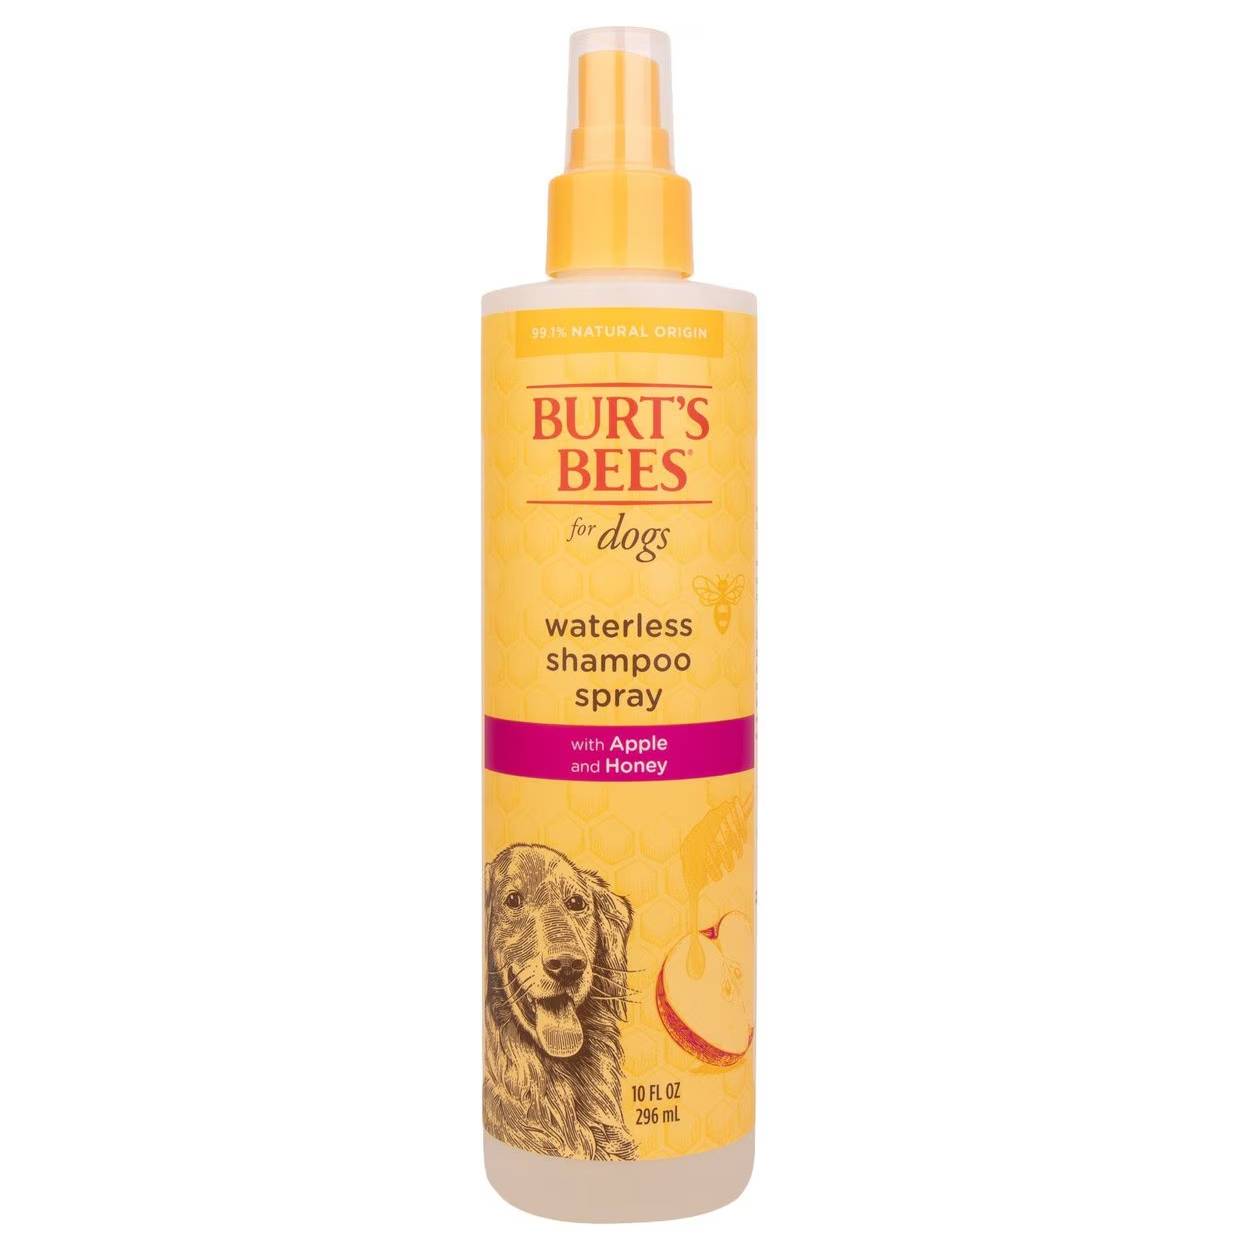 Burt’s Bees Waterless Shampoo with Apple & Honey